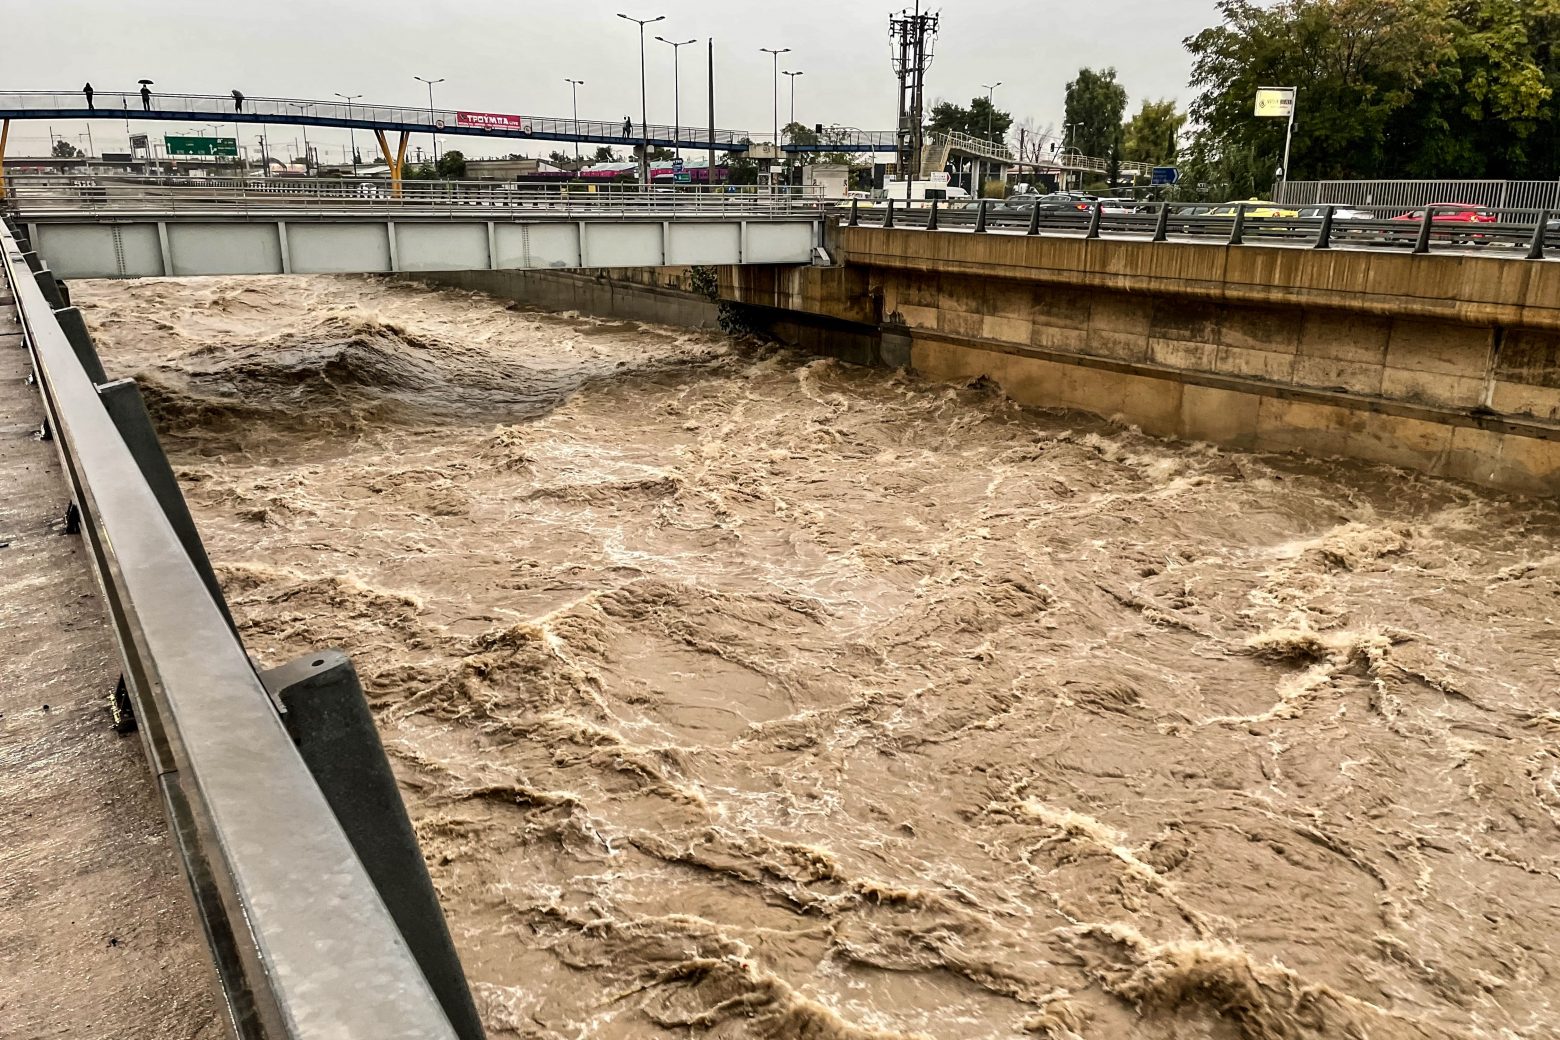 Κακοκαιρία: Δραματικές προειδοποιήσεις ειδικών στο in για πλημμυρικά φαινόμενα - Ποιες περιοχές κινδυνεύουν